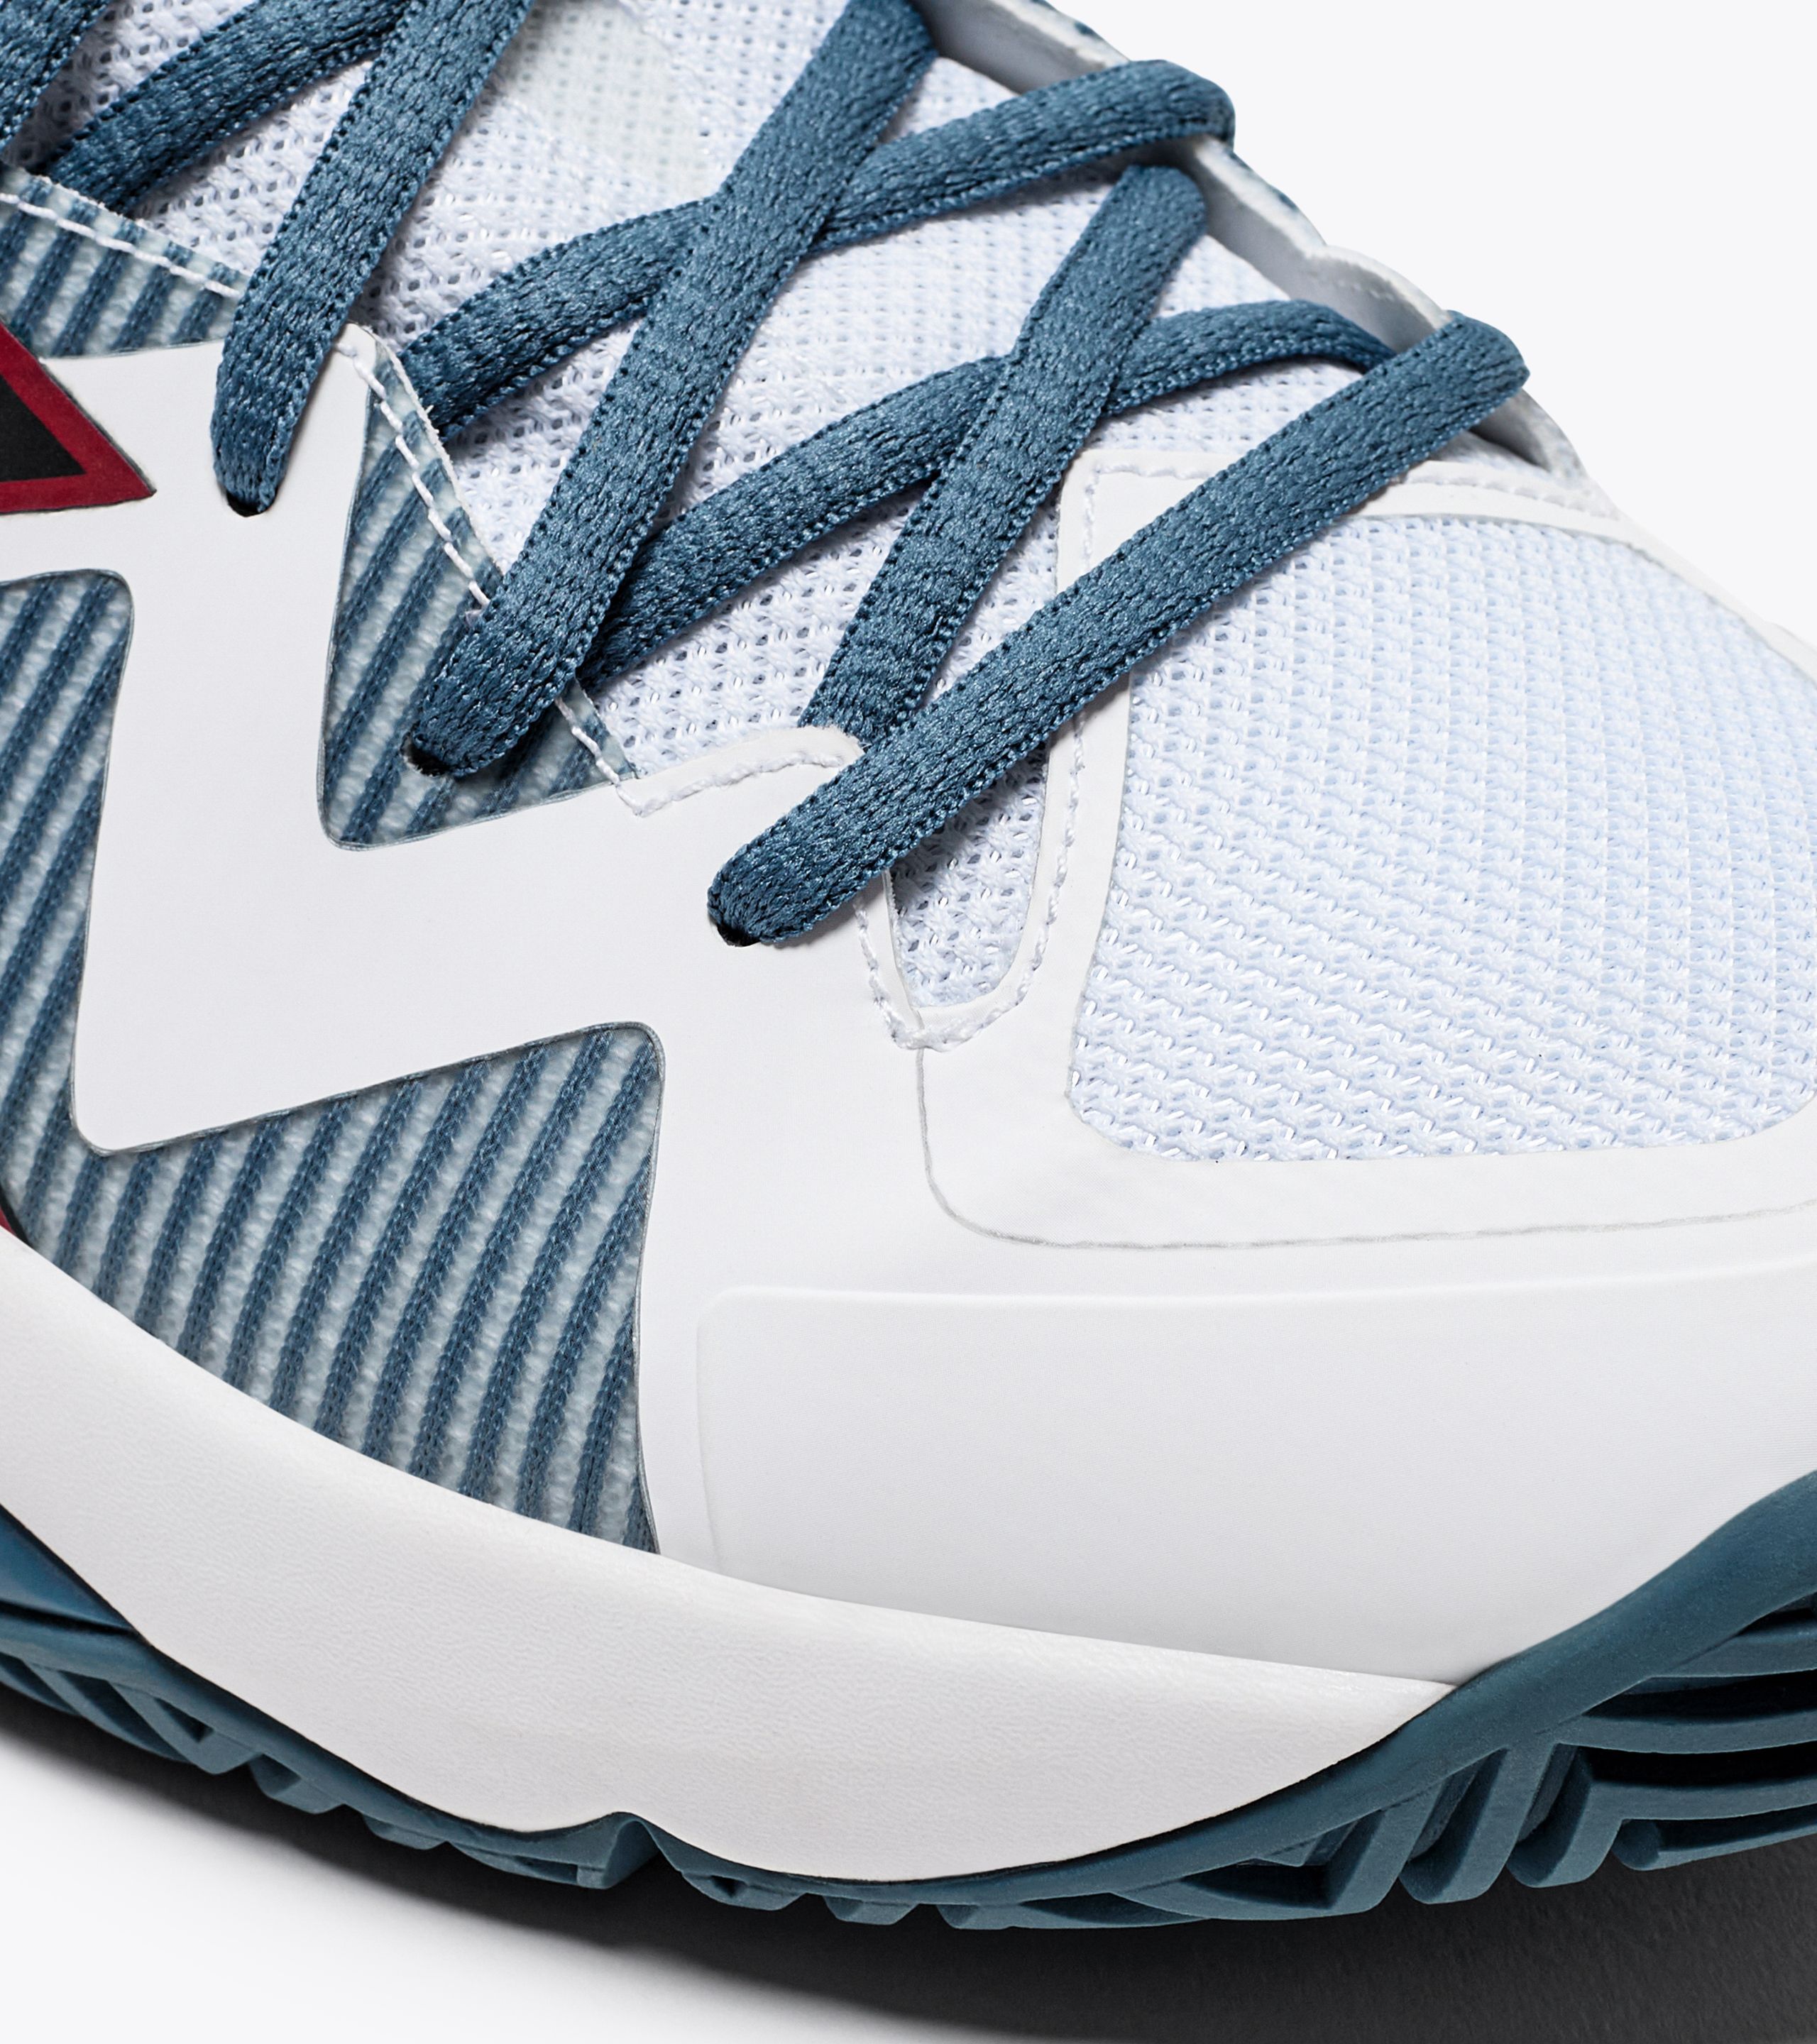 B.ICON 2 AG Tennis shoes for hard surfaces or clay - Men - Diadora 